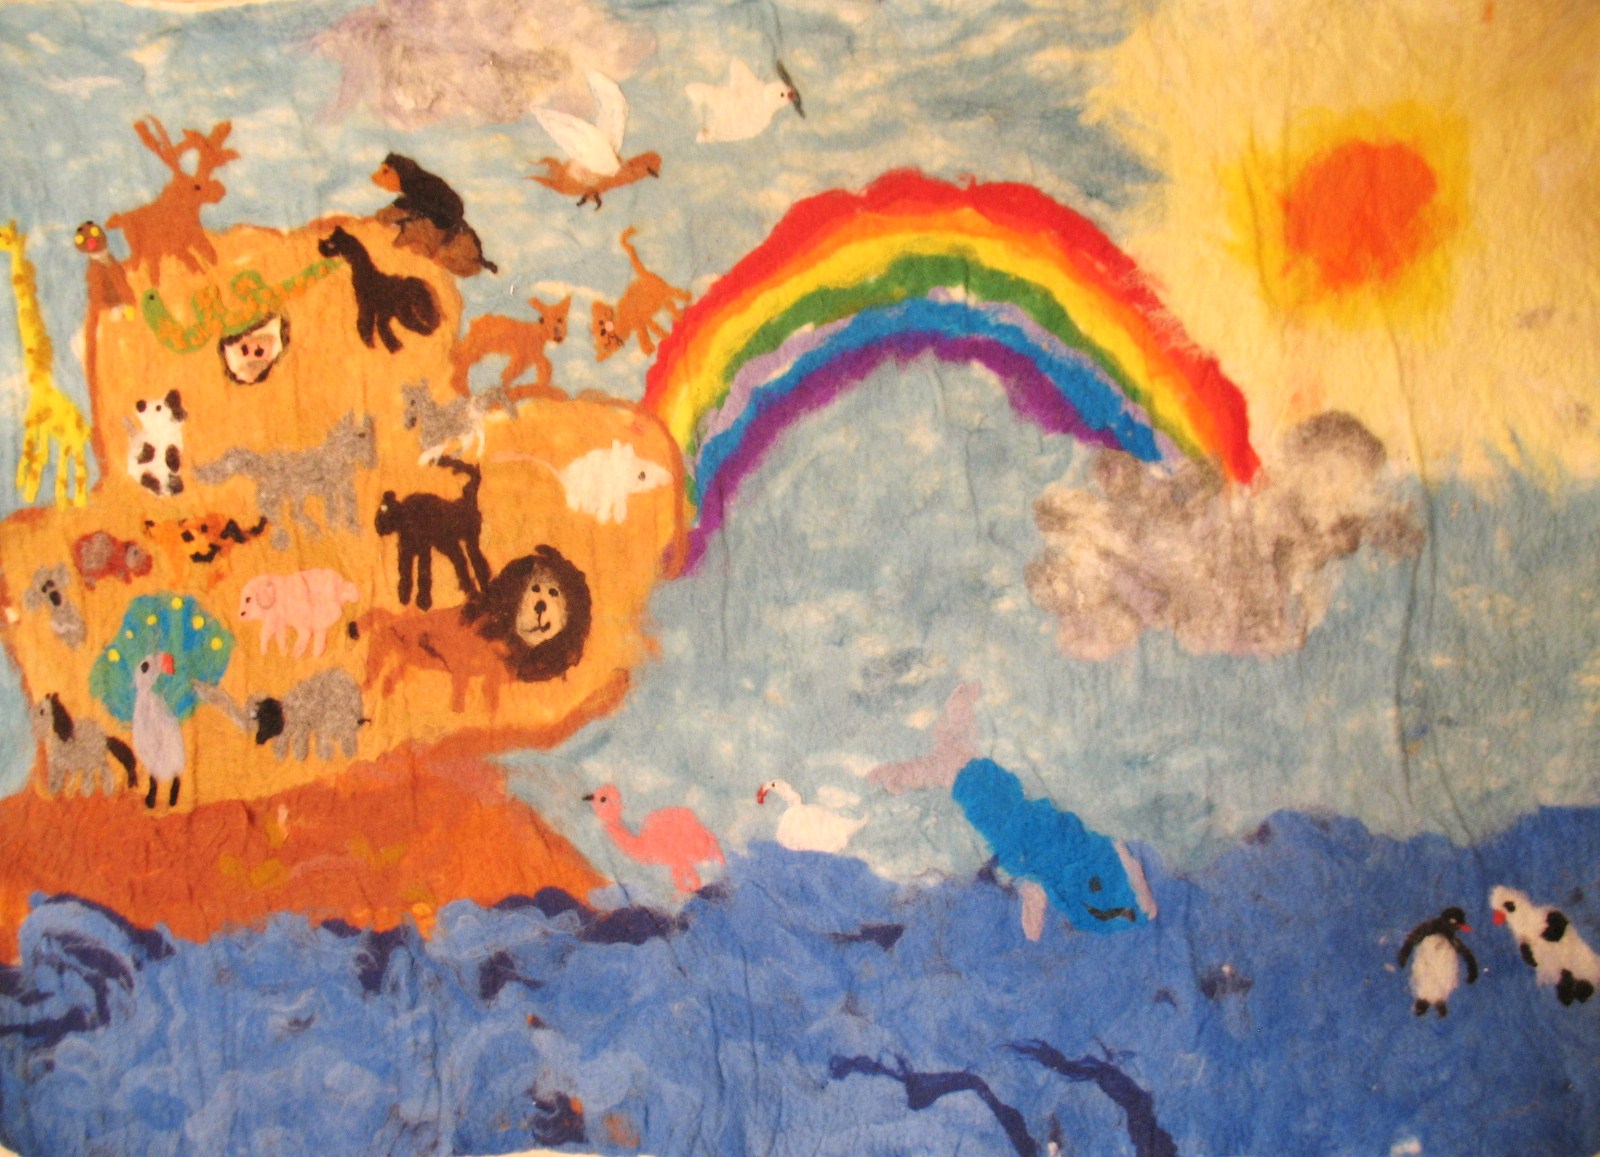 ציור של ילד בגן אנתרופוסופי. תמונה: באדיבות המכללה